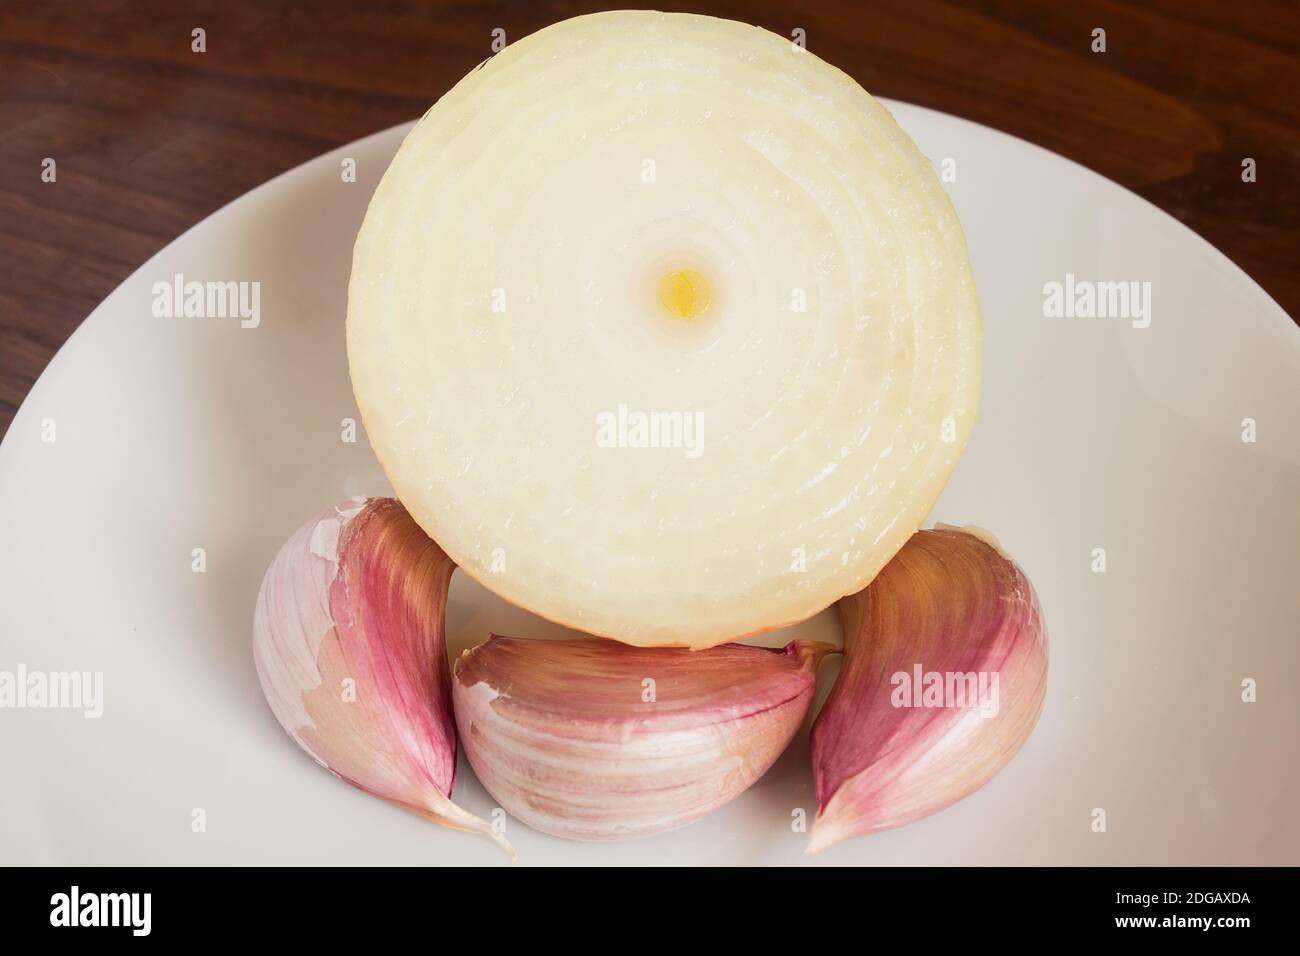 Un oignon coupé en deux et trois gousses d'ail sur une assiette blanche sur une table en bois. Saveurs alimentaires et végétales. Banque D'Images